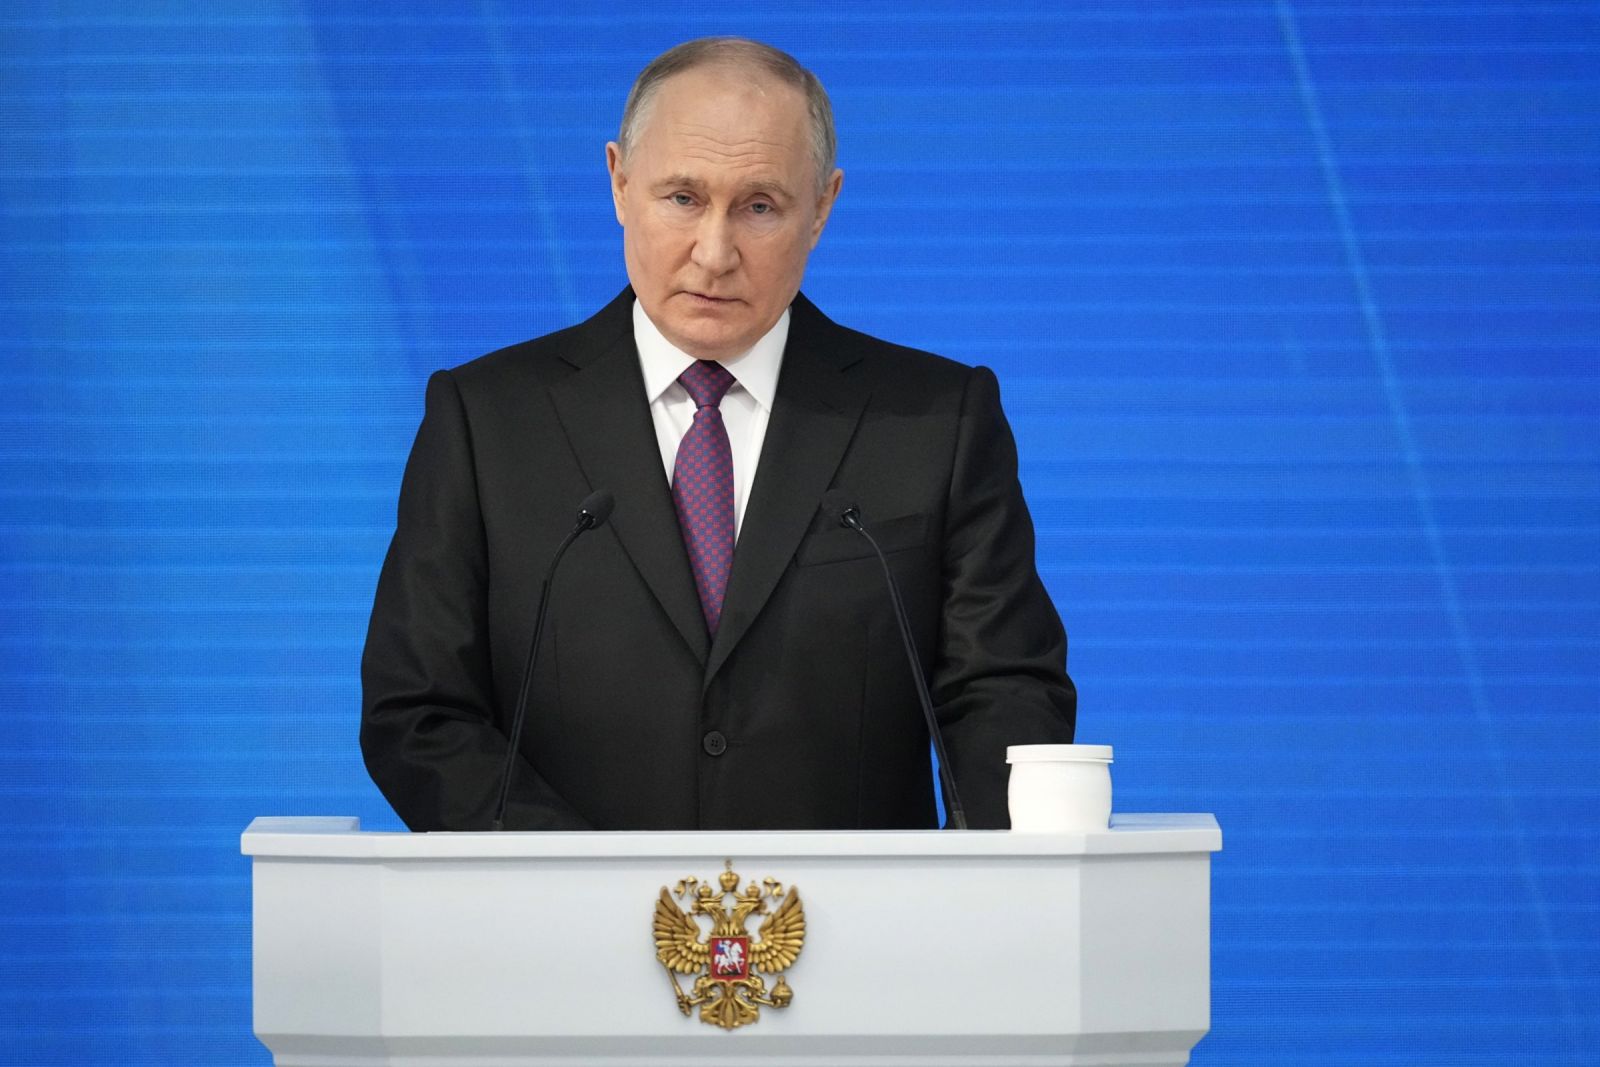 Západ riskuje jadrový konflikt, ak vyšle vojakov na Ukrajinu, povedal Vladimir Putin v prejave o stave národa